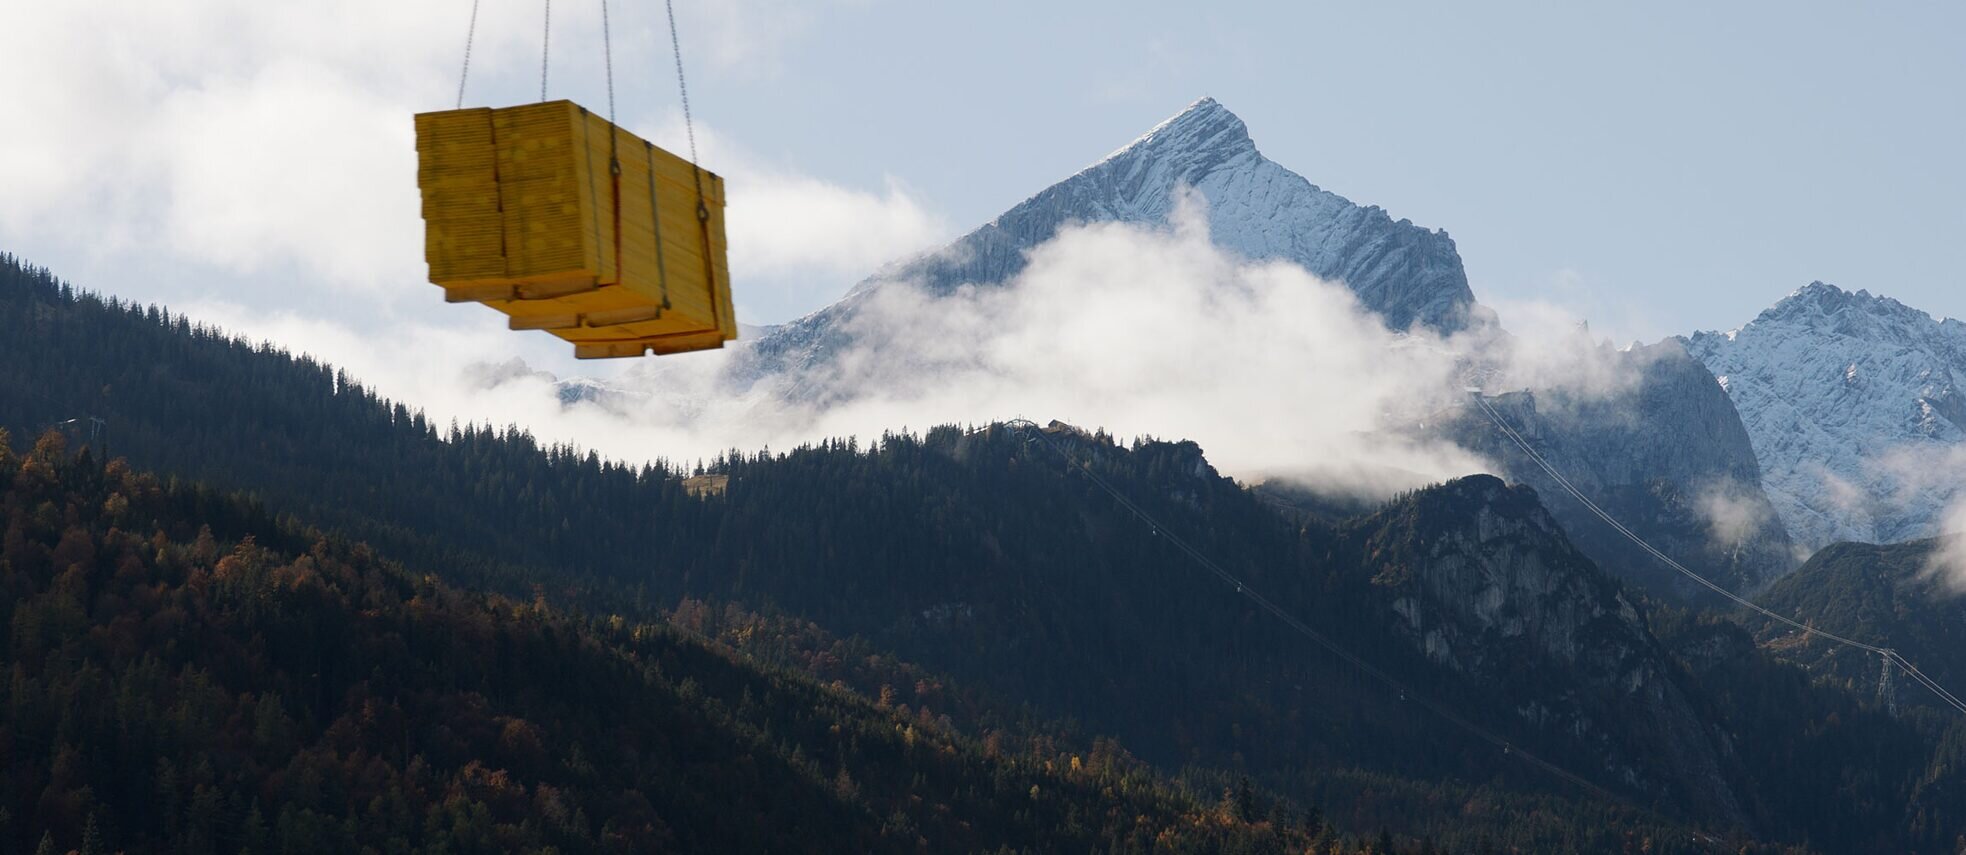 Építkezés az Alpokban - egy képkocka a filmből